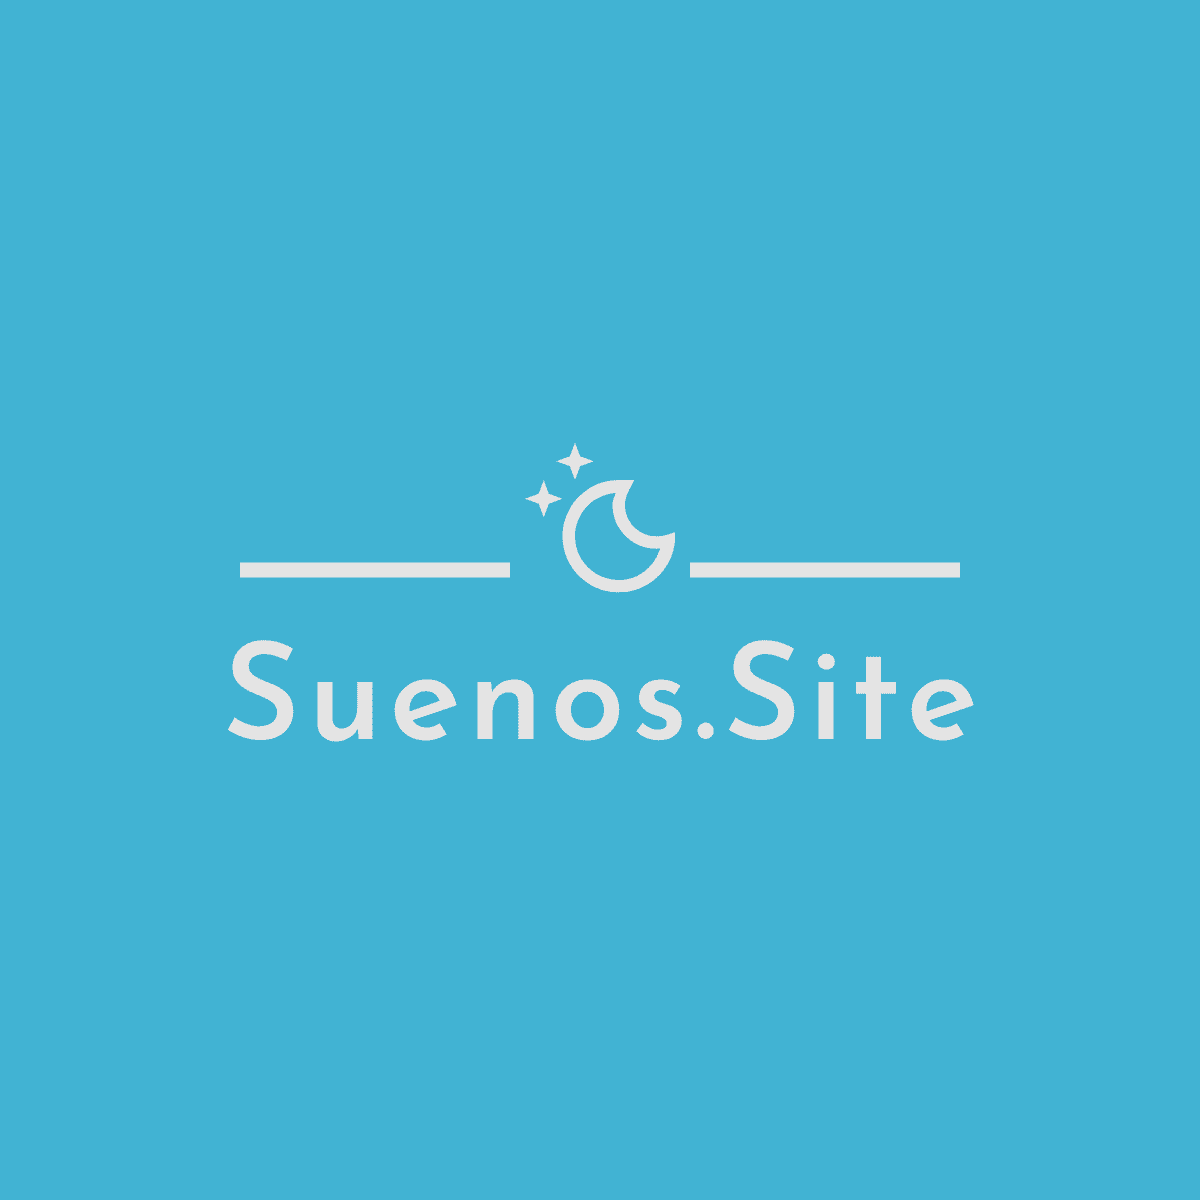 (c) Suenos.site